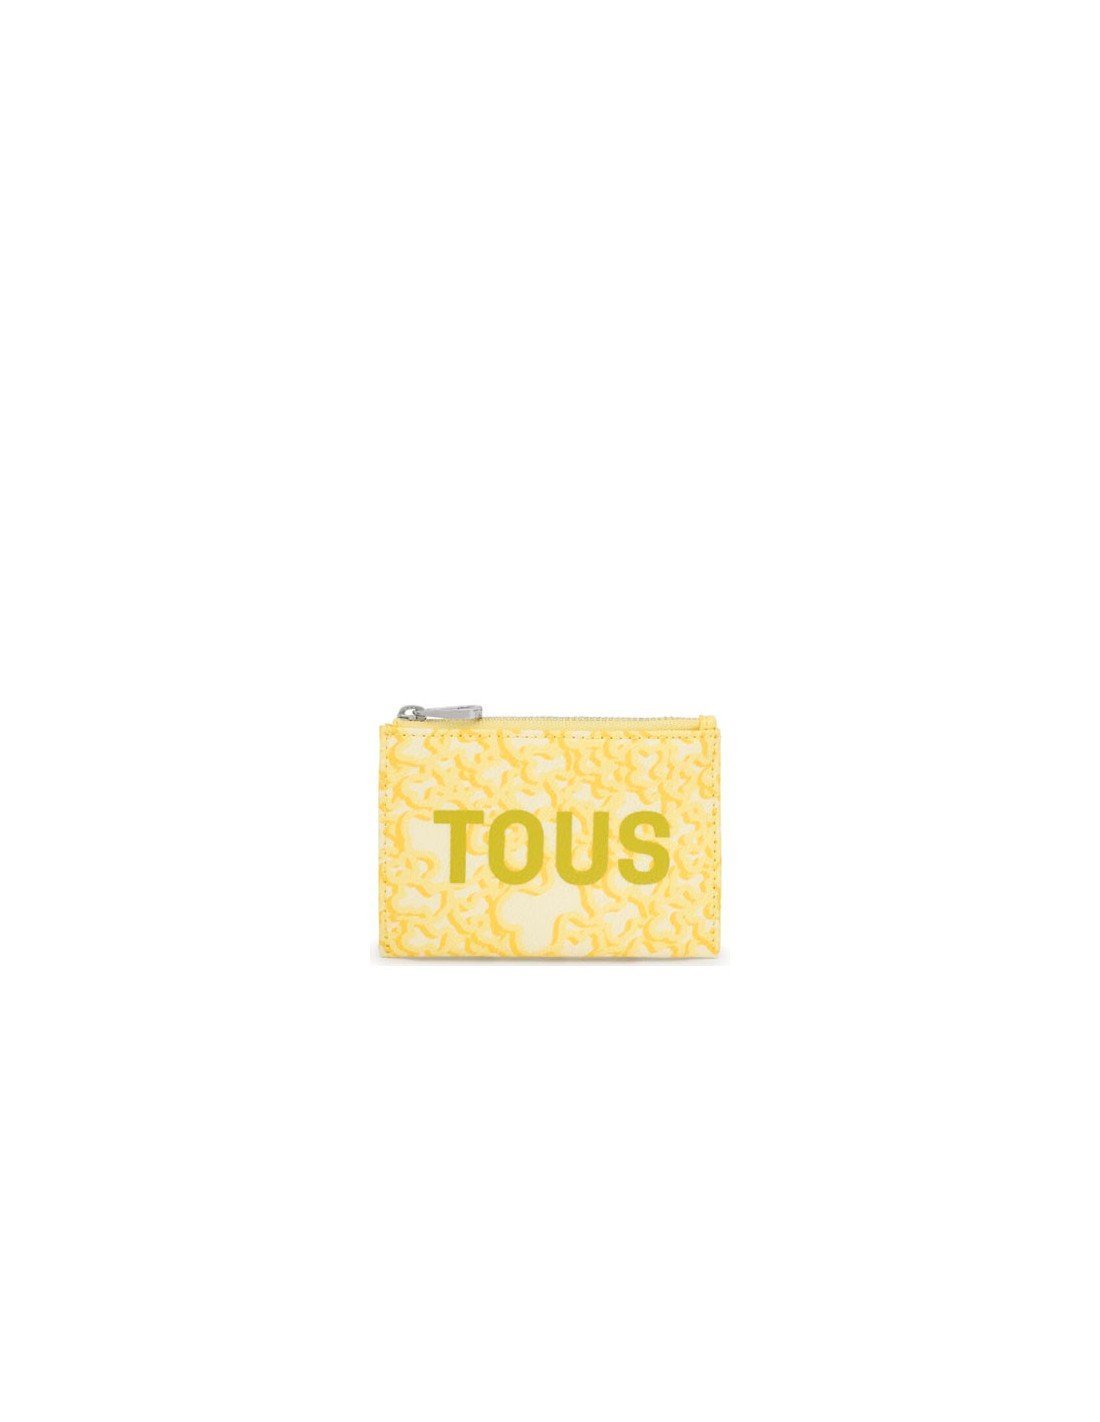 Tous wallet card holder yellow Kaos Mini Evolution - Sam